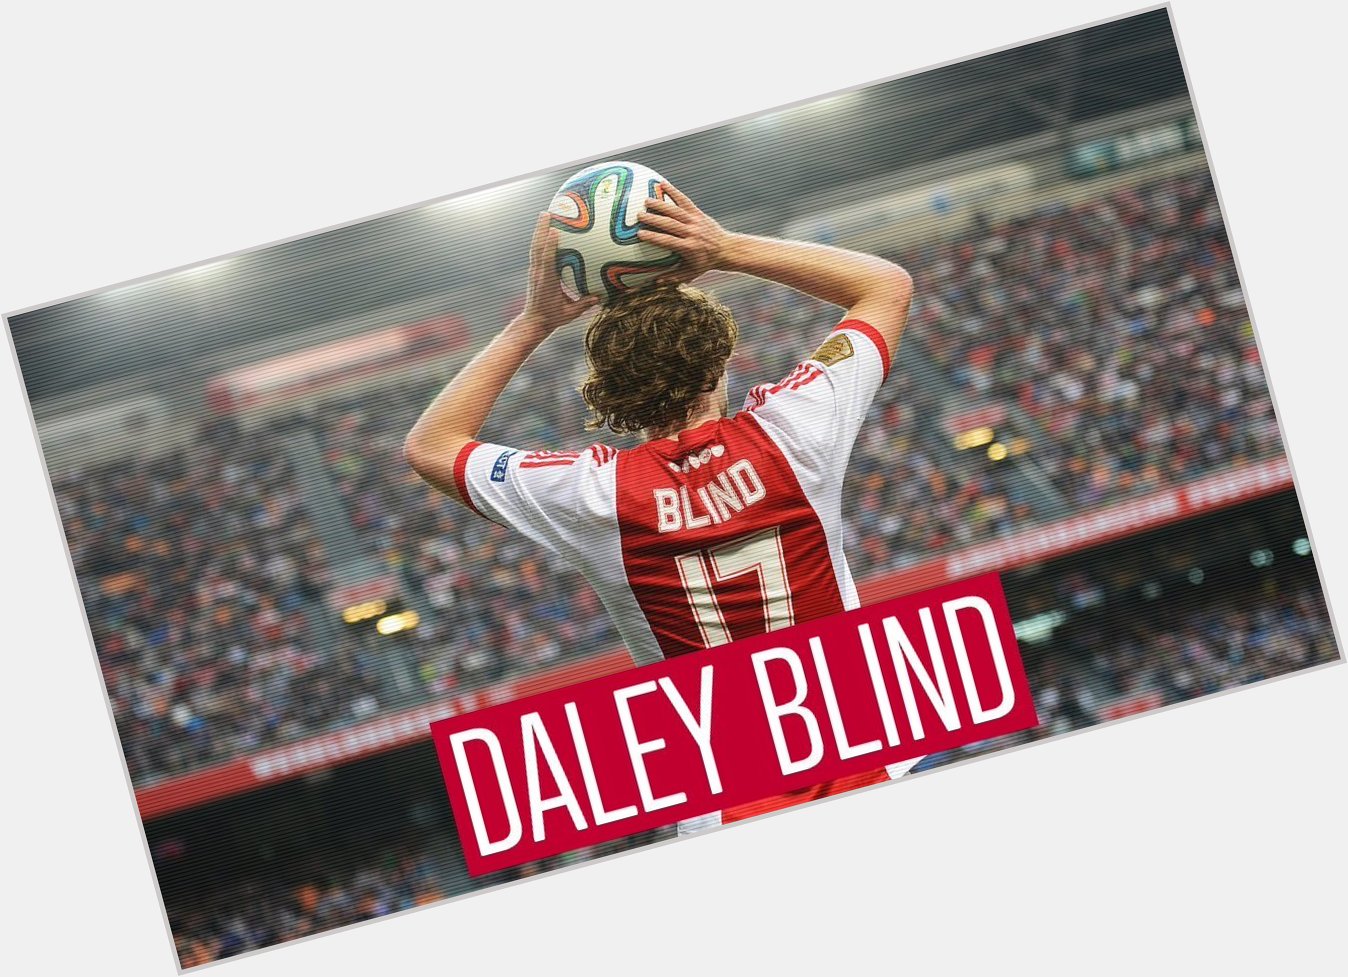 Happy birthday, Daley Blind!  